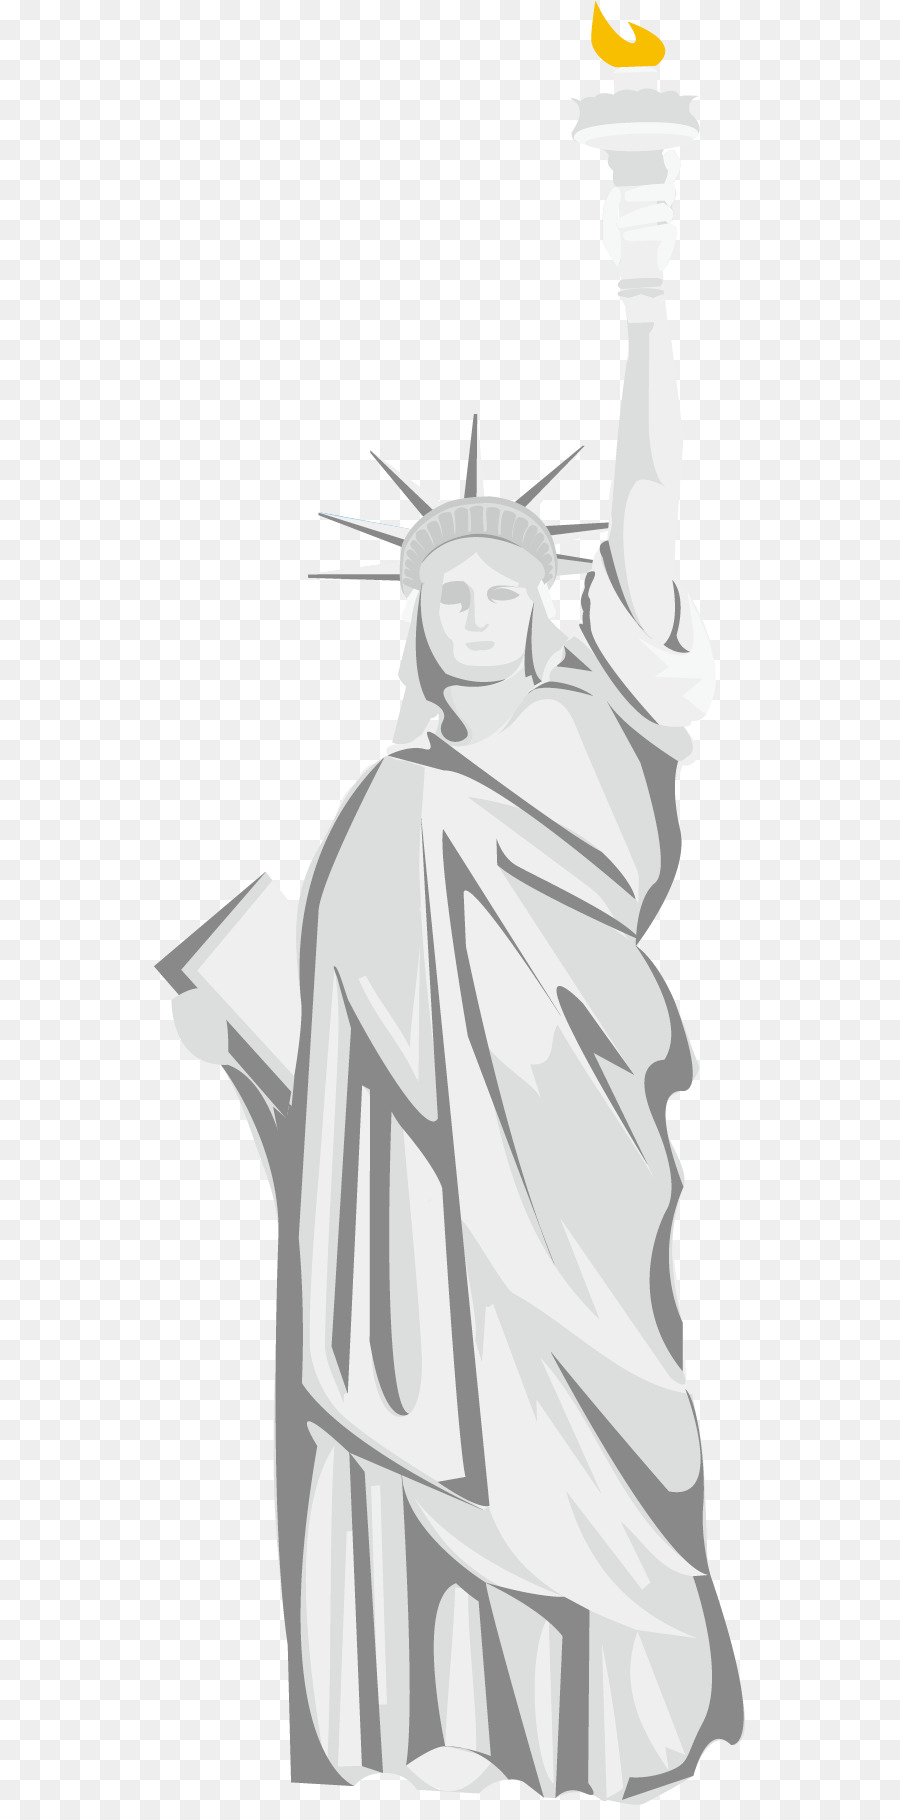  Gambar  Patung Liberty Kartun Gambar  Patung